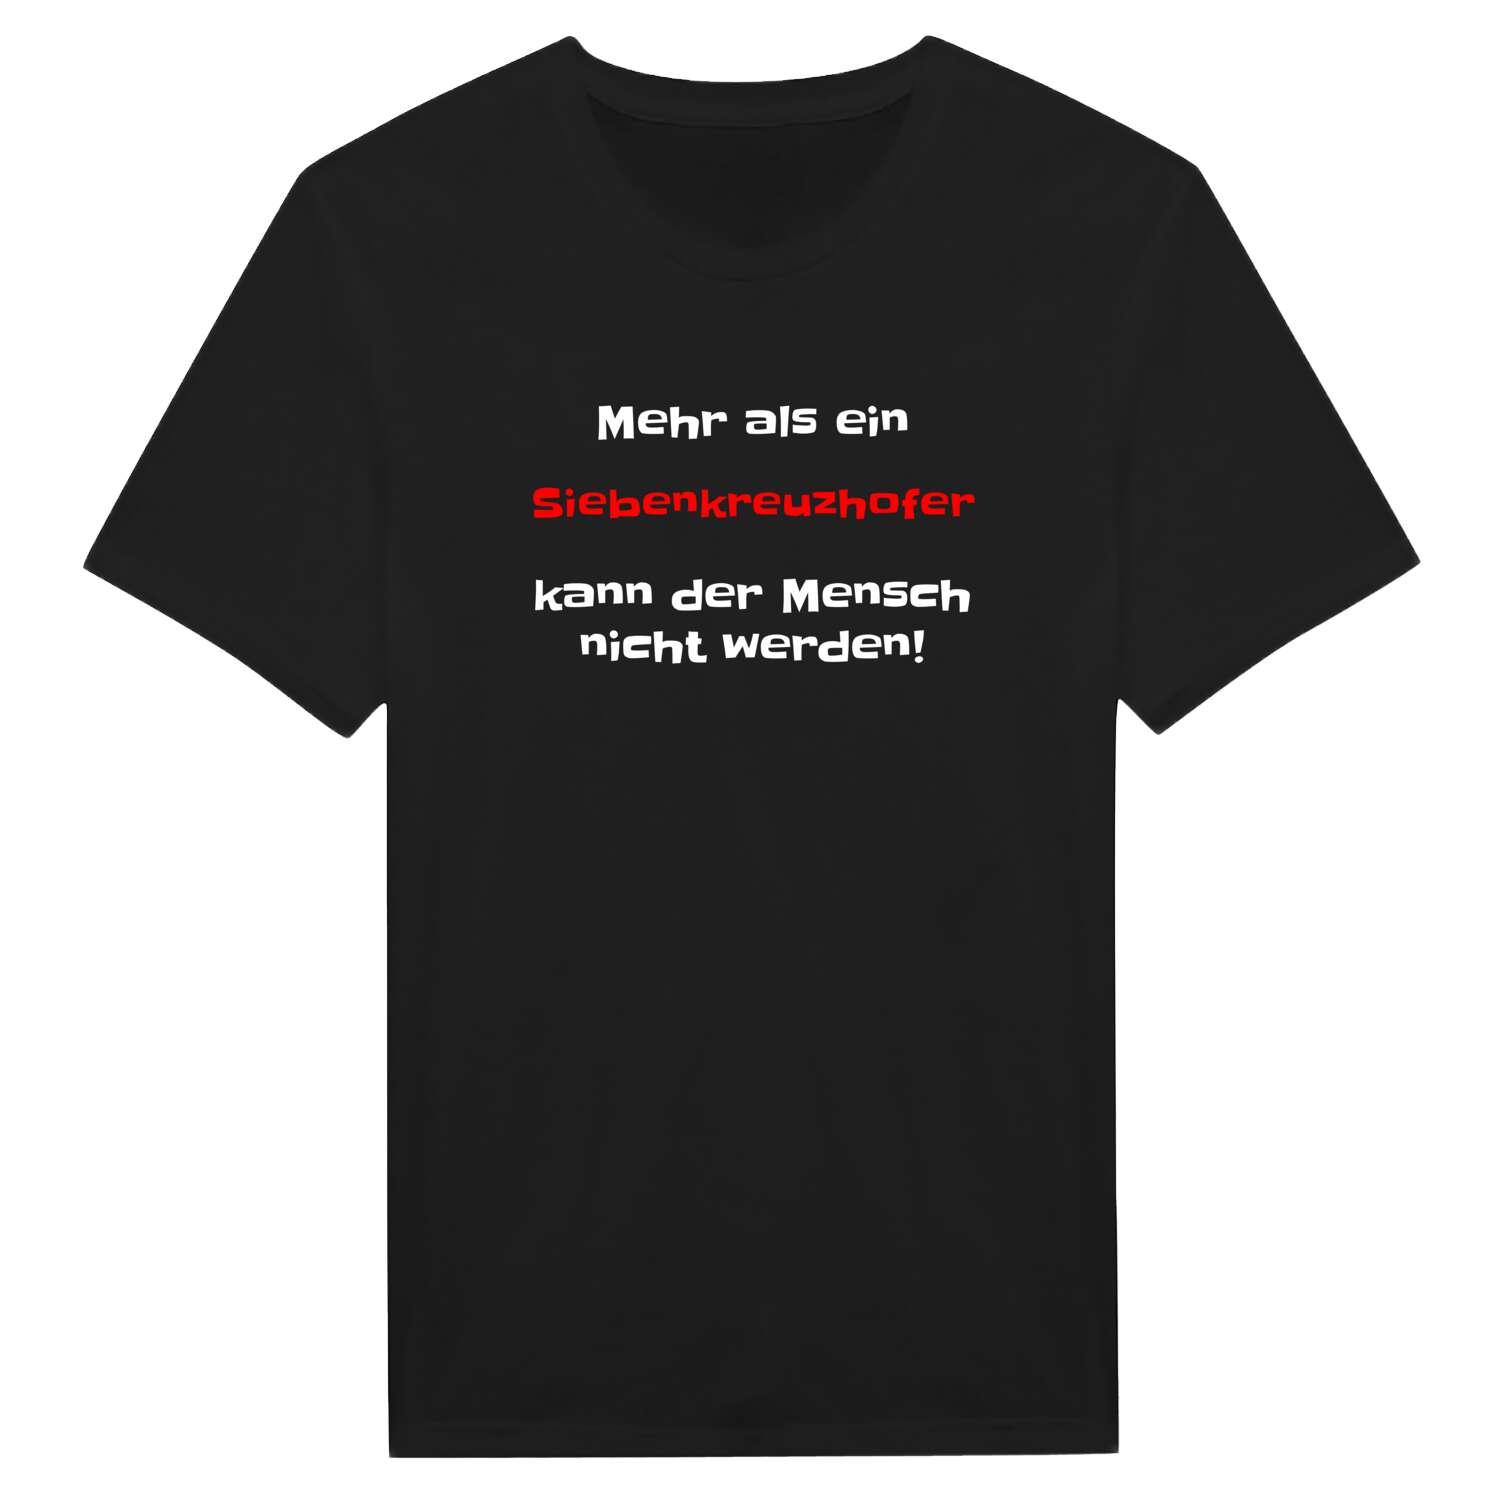 Siebenkreuzhof T-Shirt »Mehr als ein«